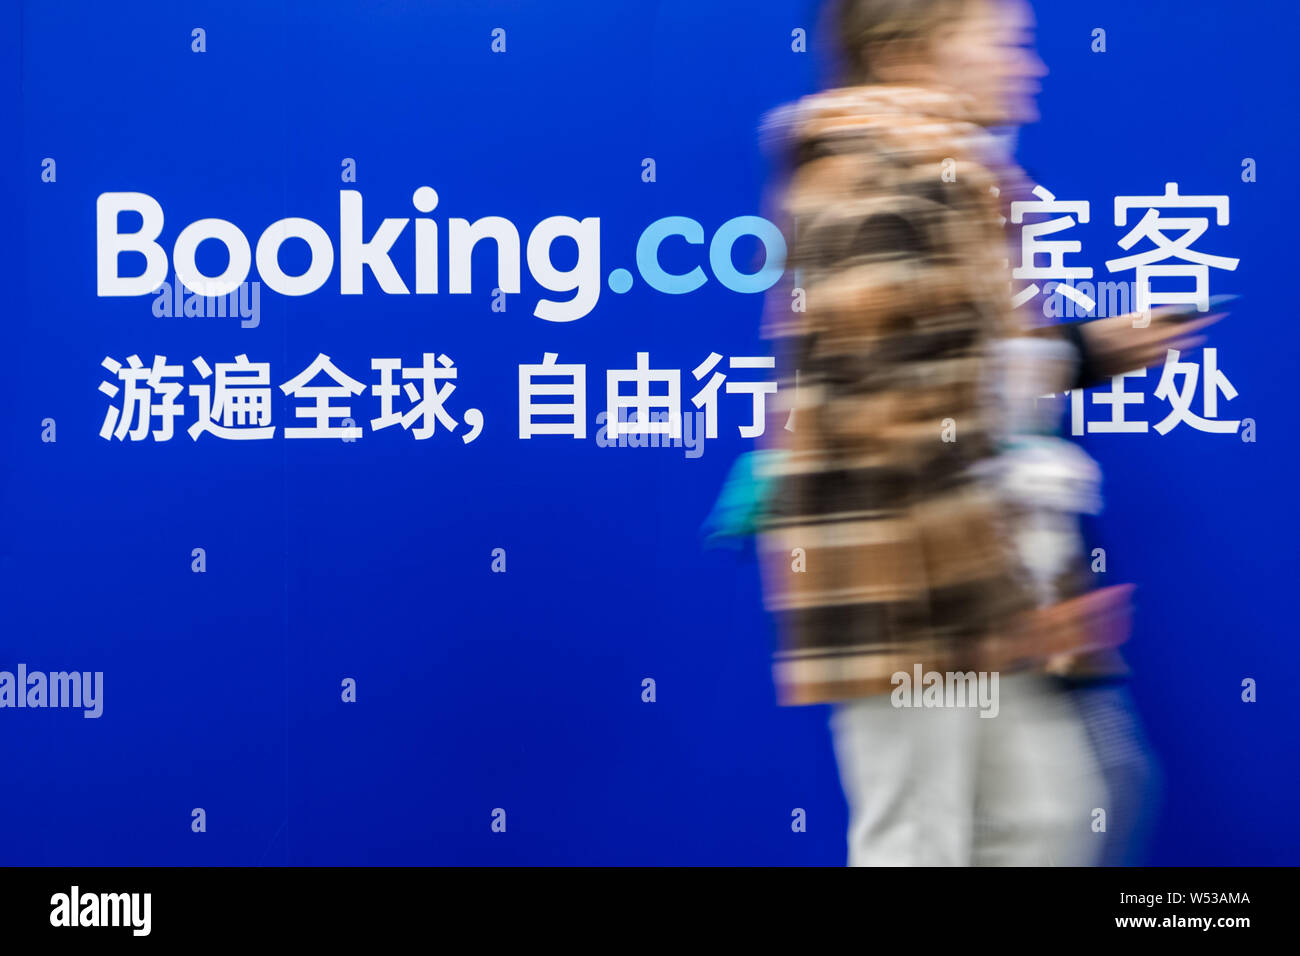 Un passager passe devant une publicité pour le site de réservation en ligne Booking.com à une station de métro à Shanghai, Chine, 29 décembre 2018. Booki Banque D'Images